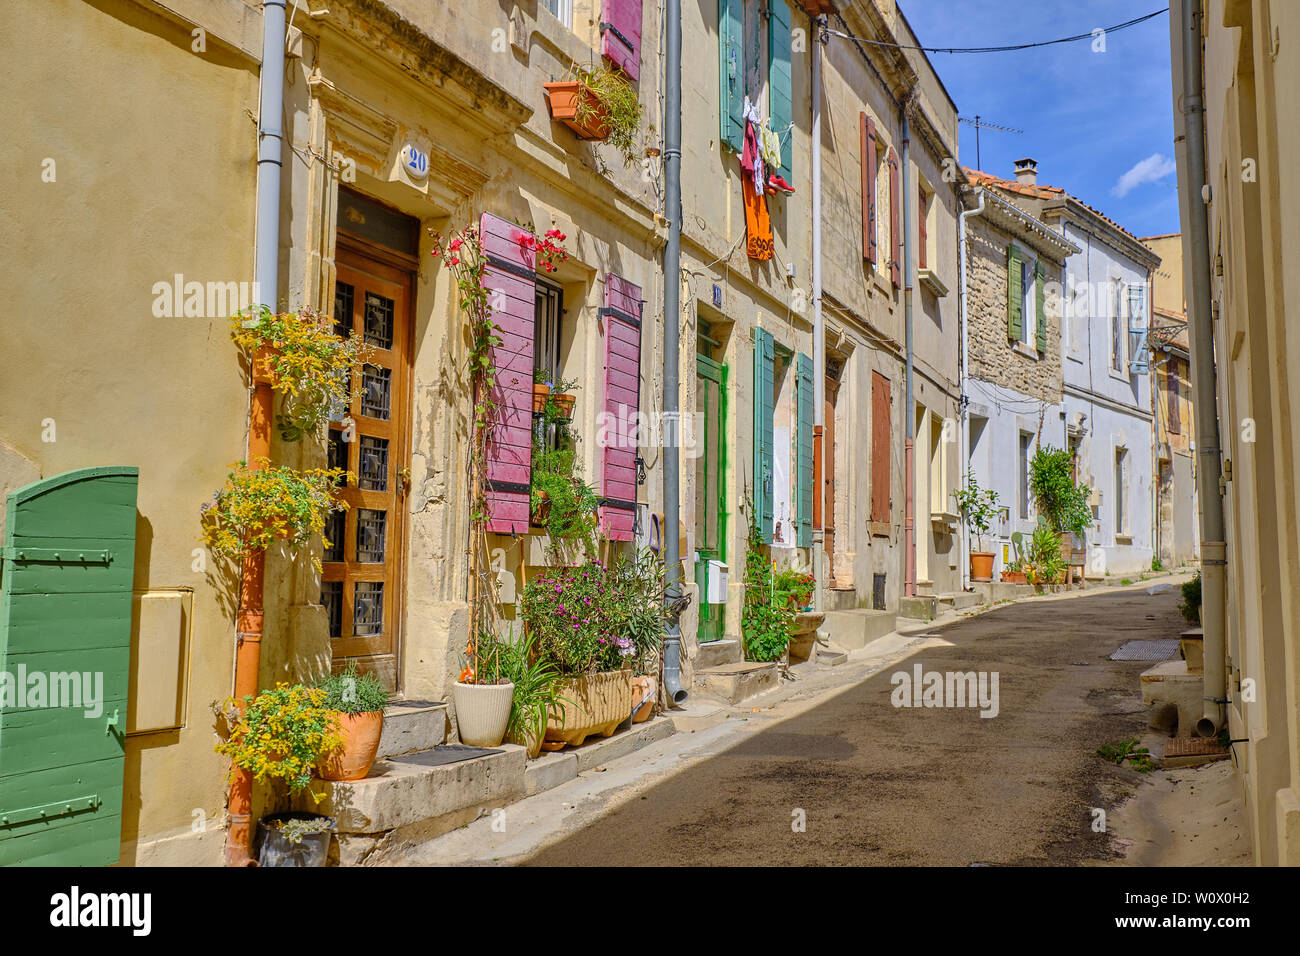 Strada tipica della parte vecchia di Arles, con colorati persiane e porte, piante pensili e servizio lavanderia in una giornata di sole. Arles, Francia Foto Stock